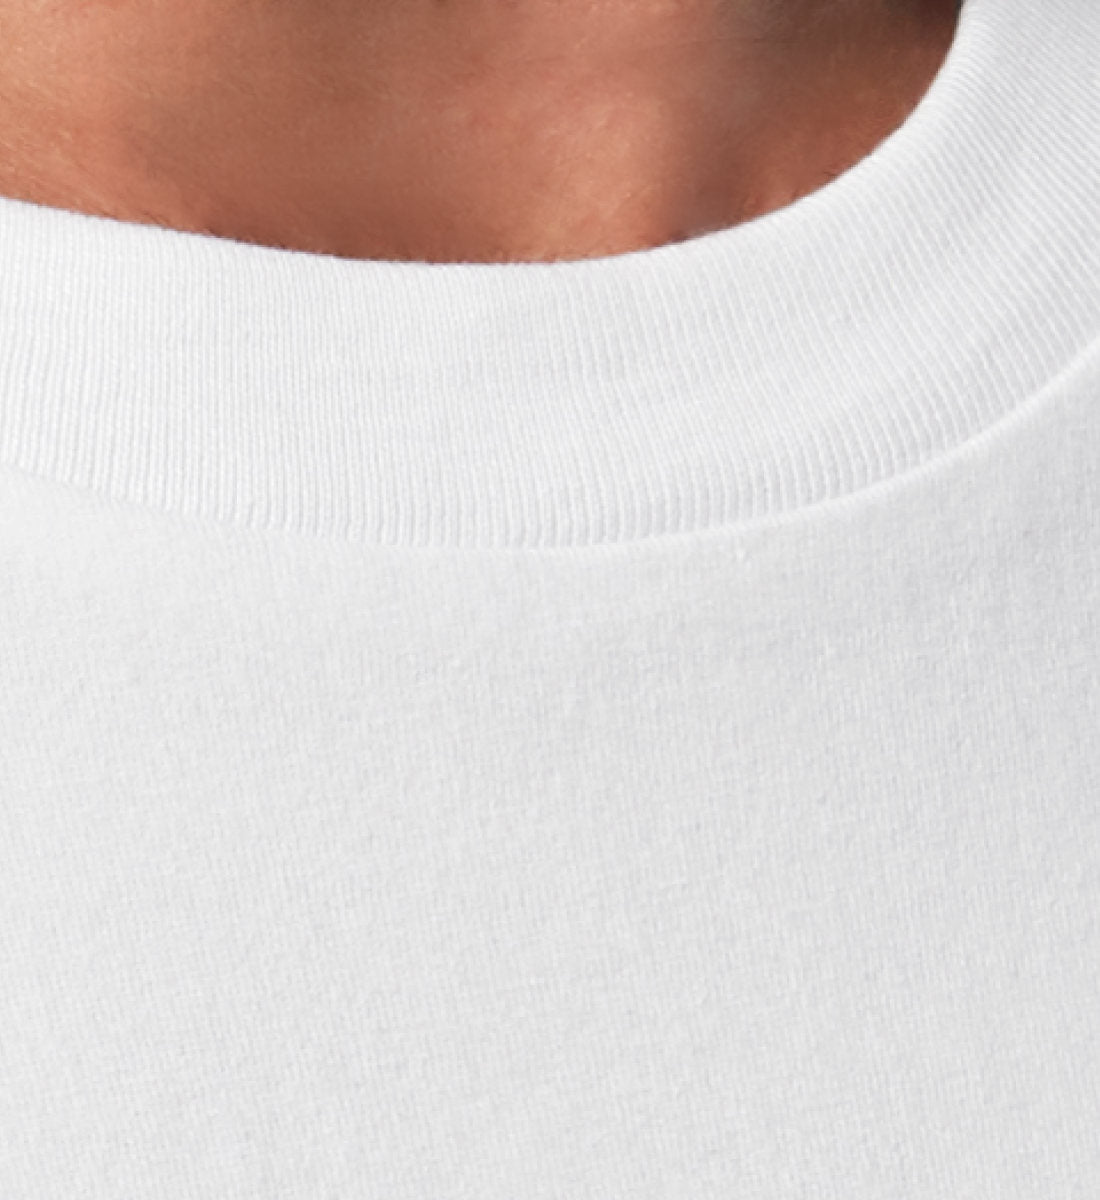 Weißes T-Shirt Unisex für Damen und Herren im Relaxed Fit rückseitig bedruckt in schwarz mit Design der Skateboard Bang Up Brain Kollektion und dem Logo Schriftzug von Roger Rockawoo Clothing